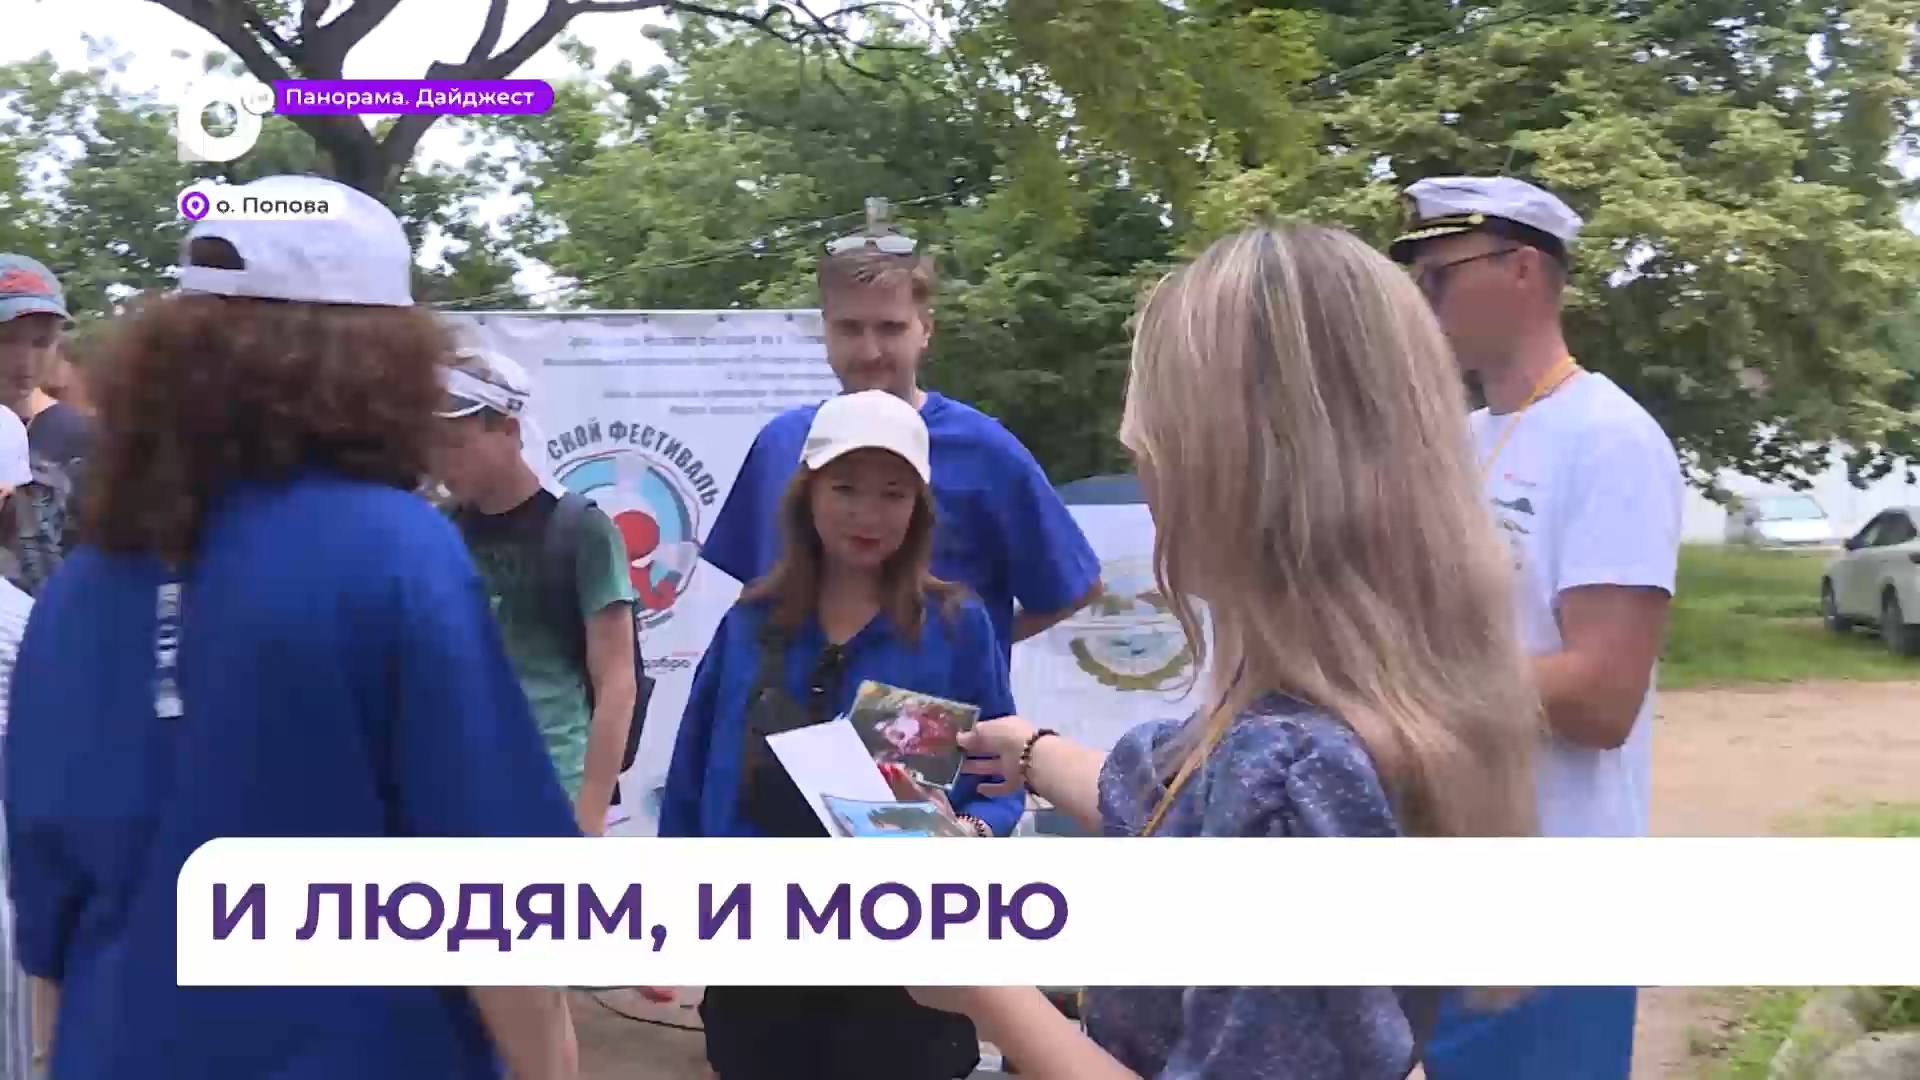 «Морской фестиваль» во Владивостоке объединил экологов, волонтёров и местных жителей